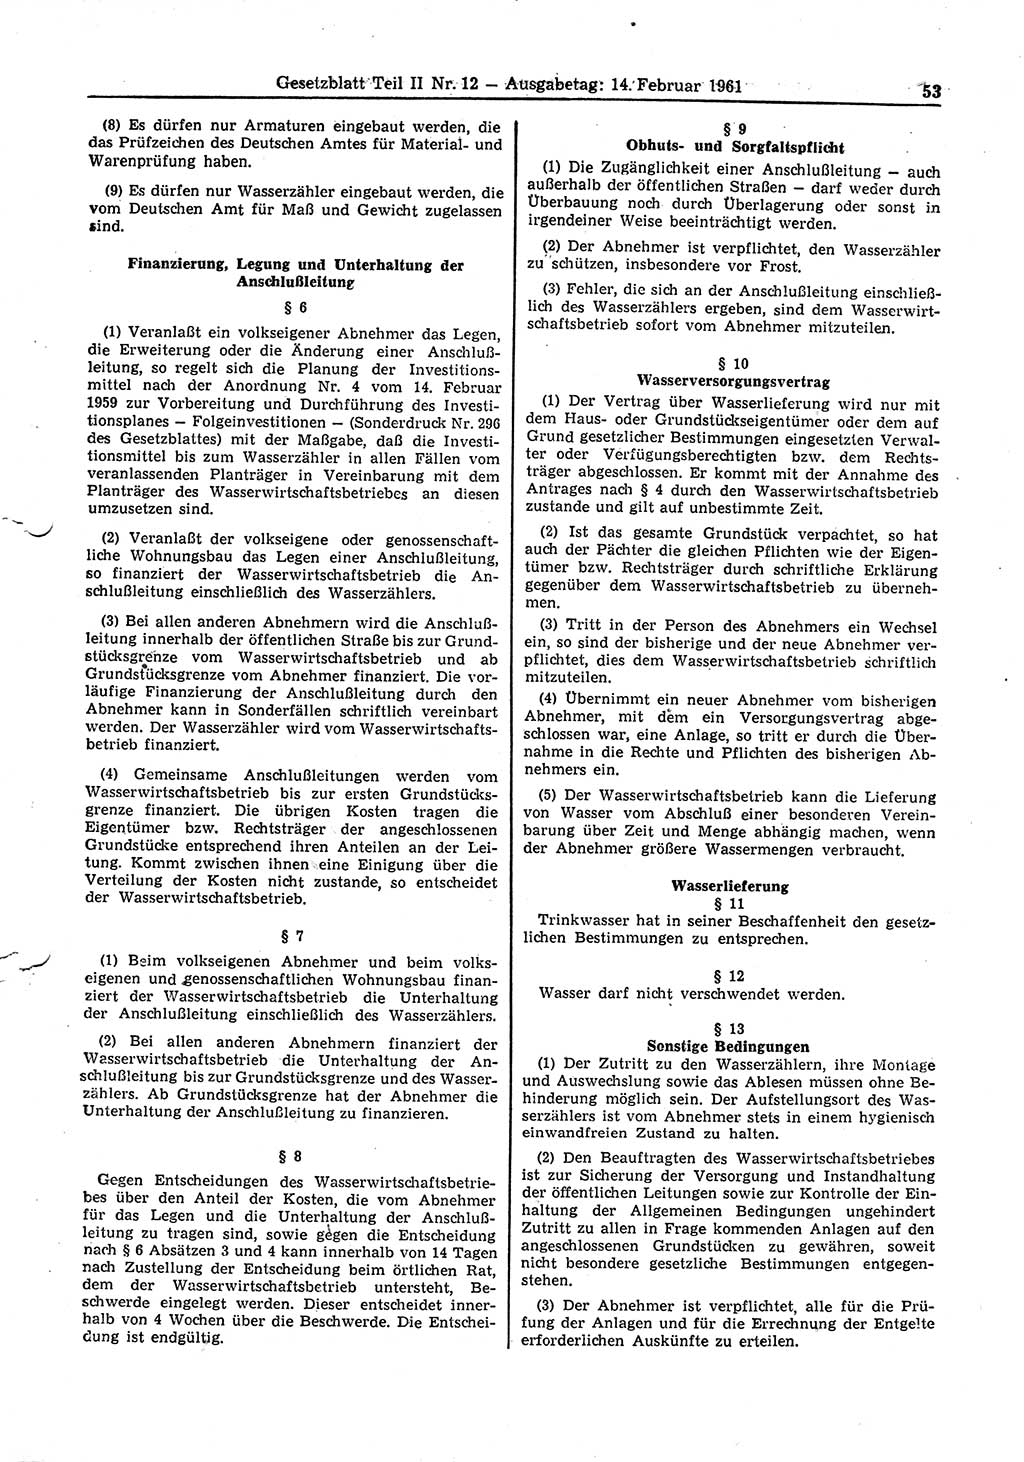 Gesetzblatt (GBl.) der Deutschen Demokratischen Republik (DDR) Teil ⅠⅠ 1961, Seite 53 (GBl. DDR ⅠⅠ 1961, S. 53)